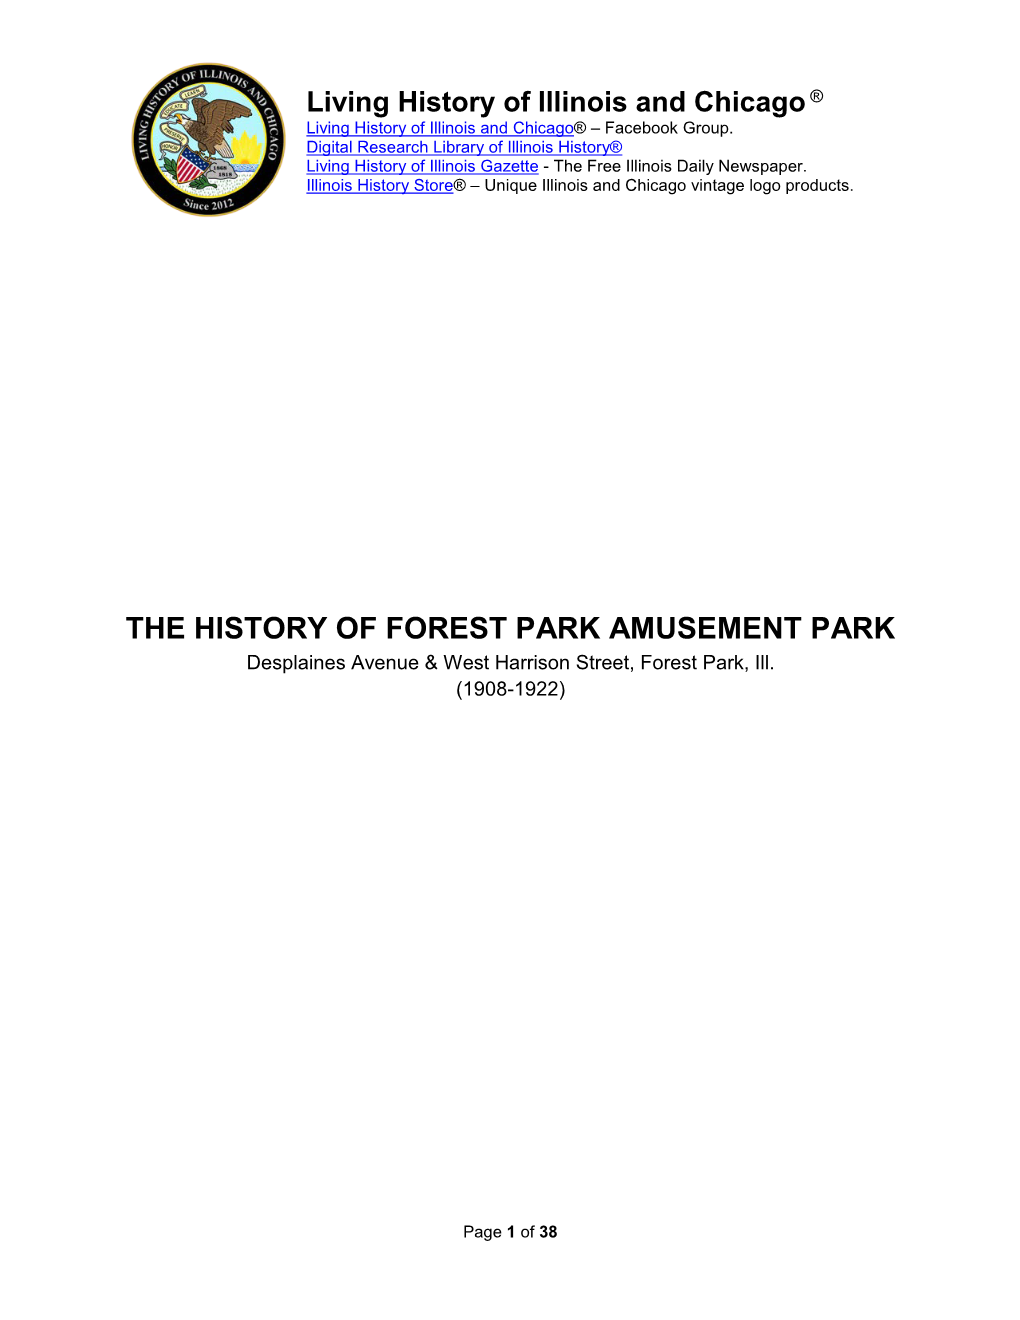 Forest Park Amusement Park, Forest Park, IL (1907-1922)